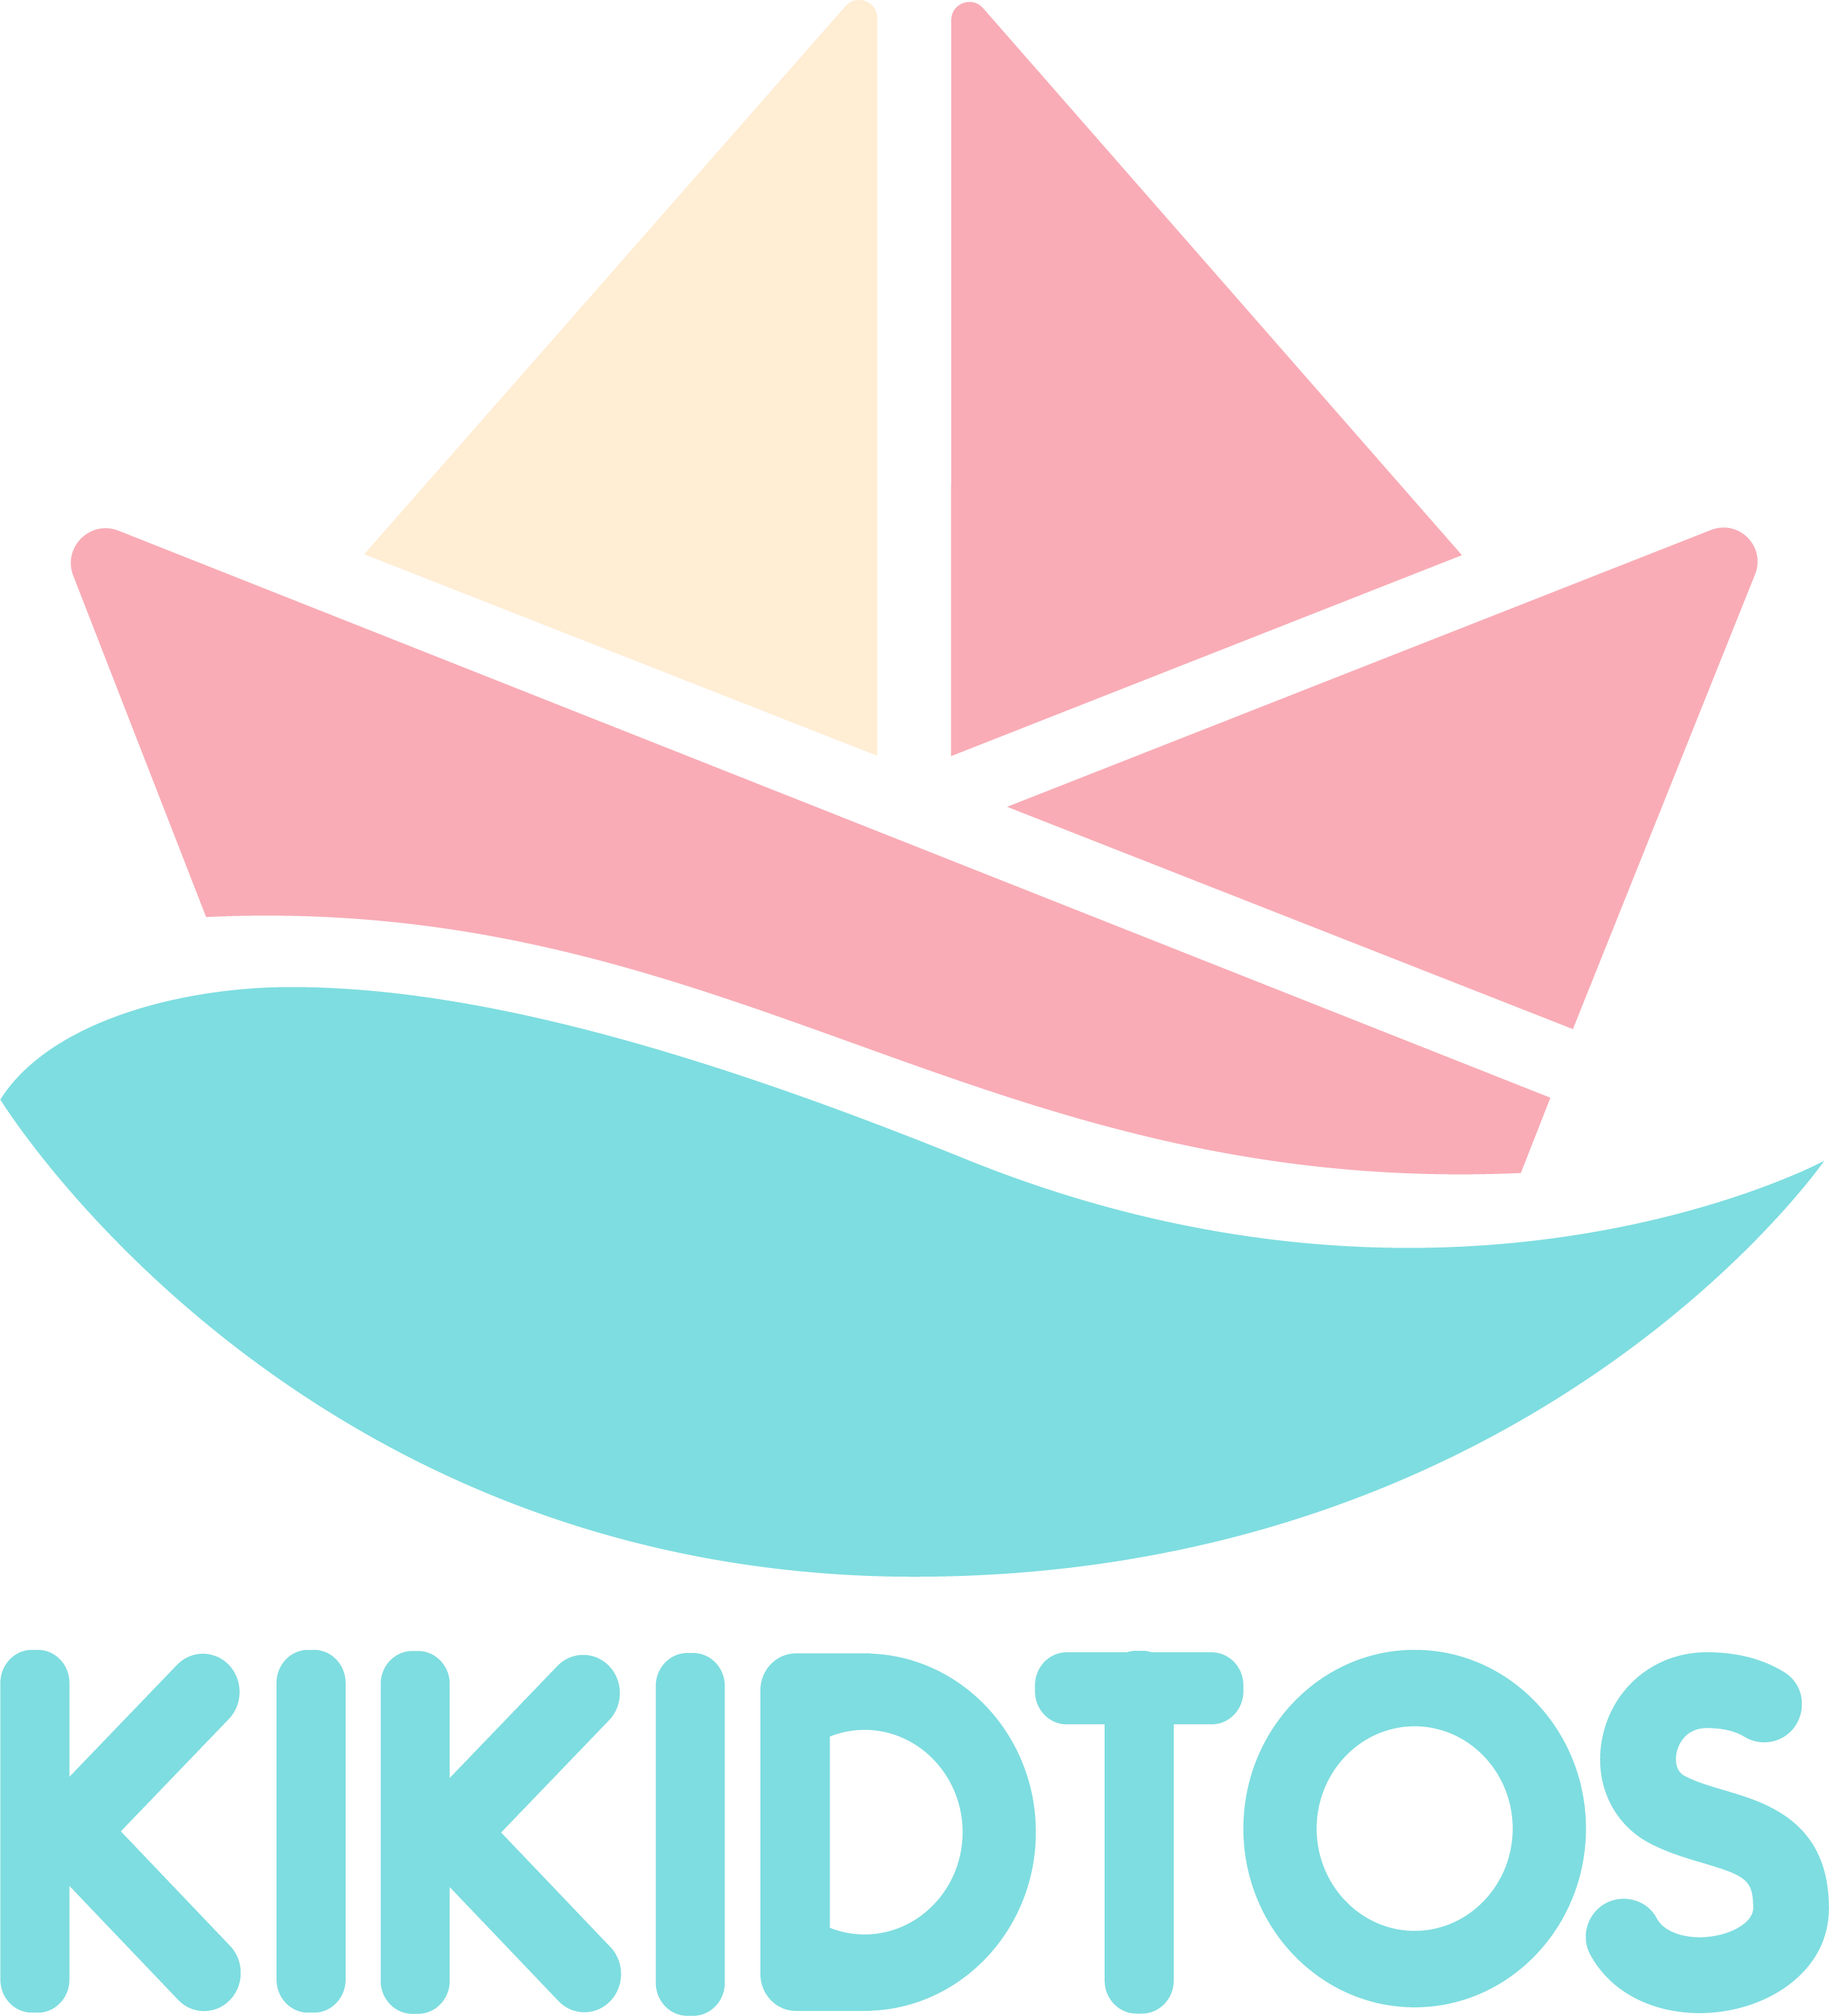 Kikidtos - Tienda de ropa para bebés - ropa infantil.